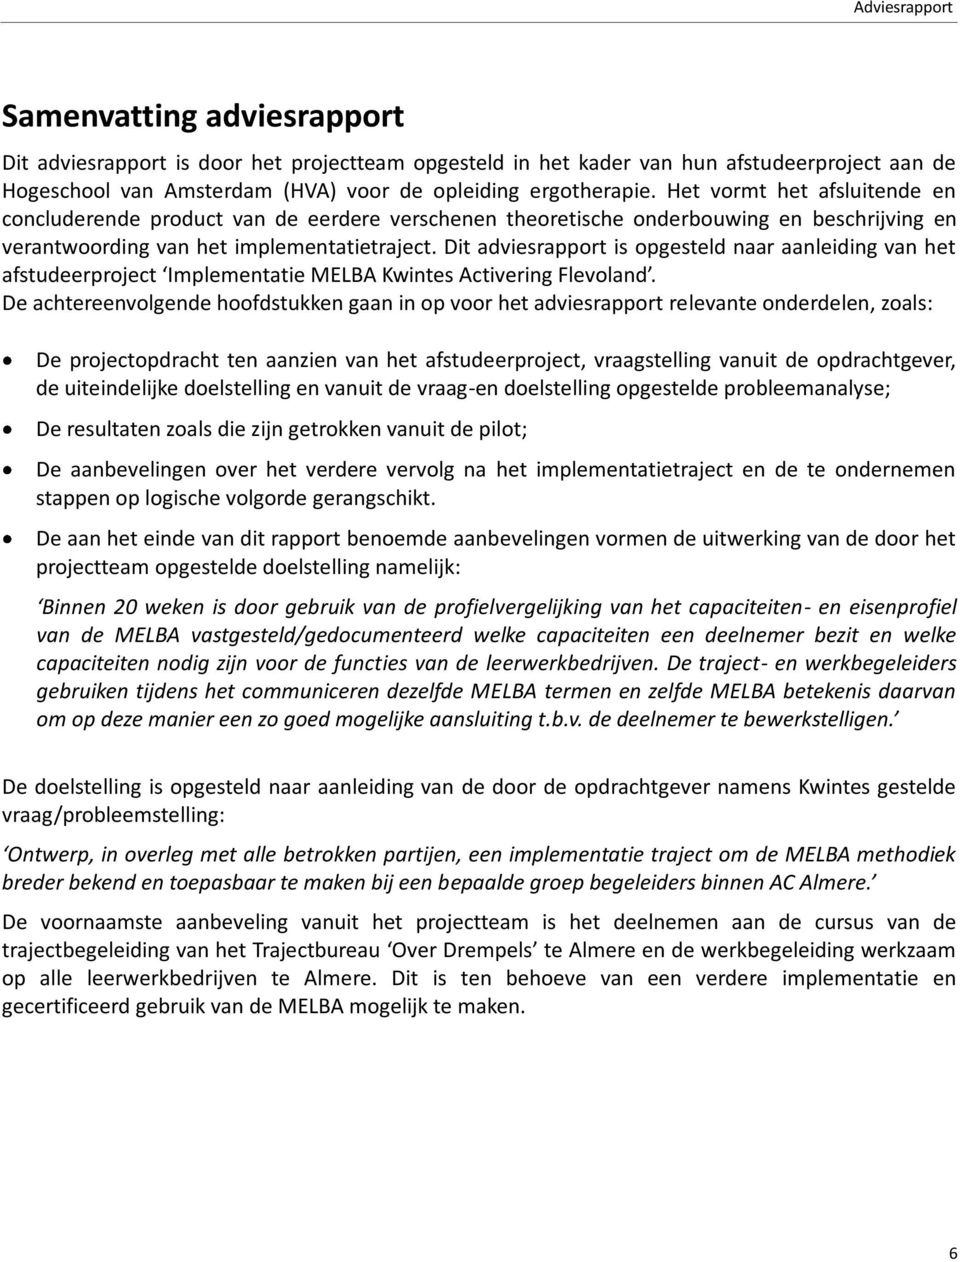 Dit adviesrapport is opgesteld naar aanleiding van het afstudeerproject Implementatie MELBA Kwintes Activering Flevoland.